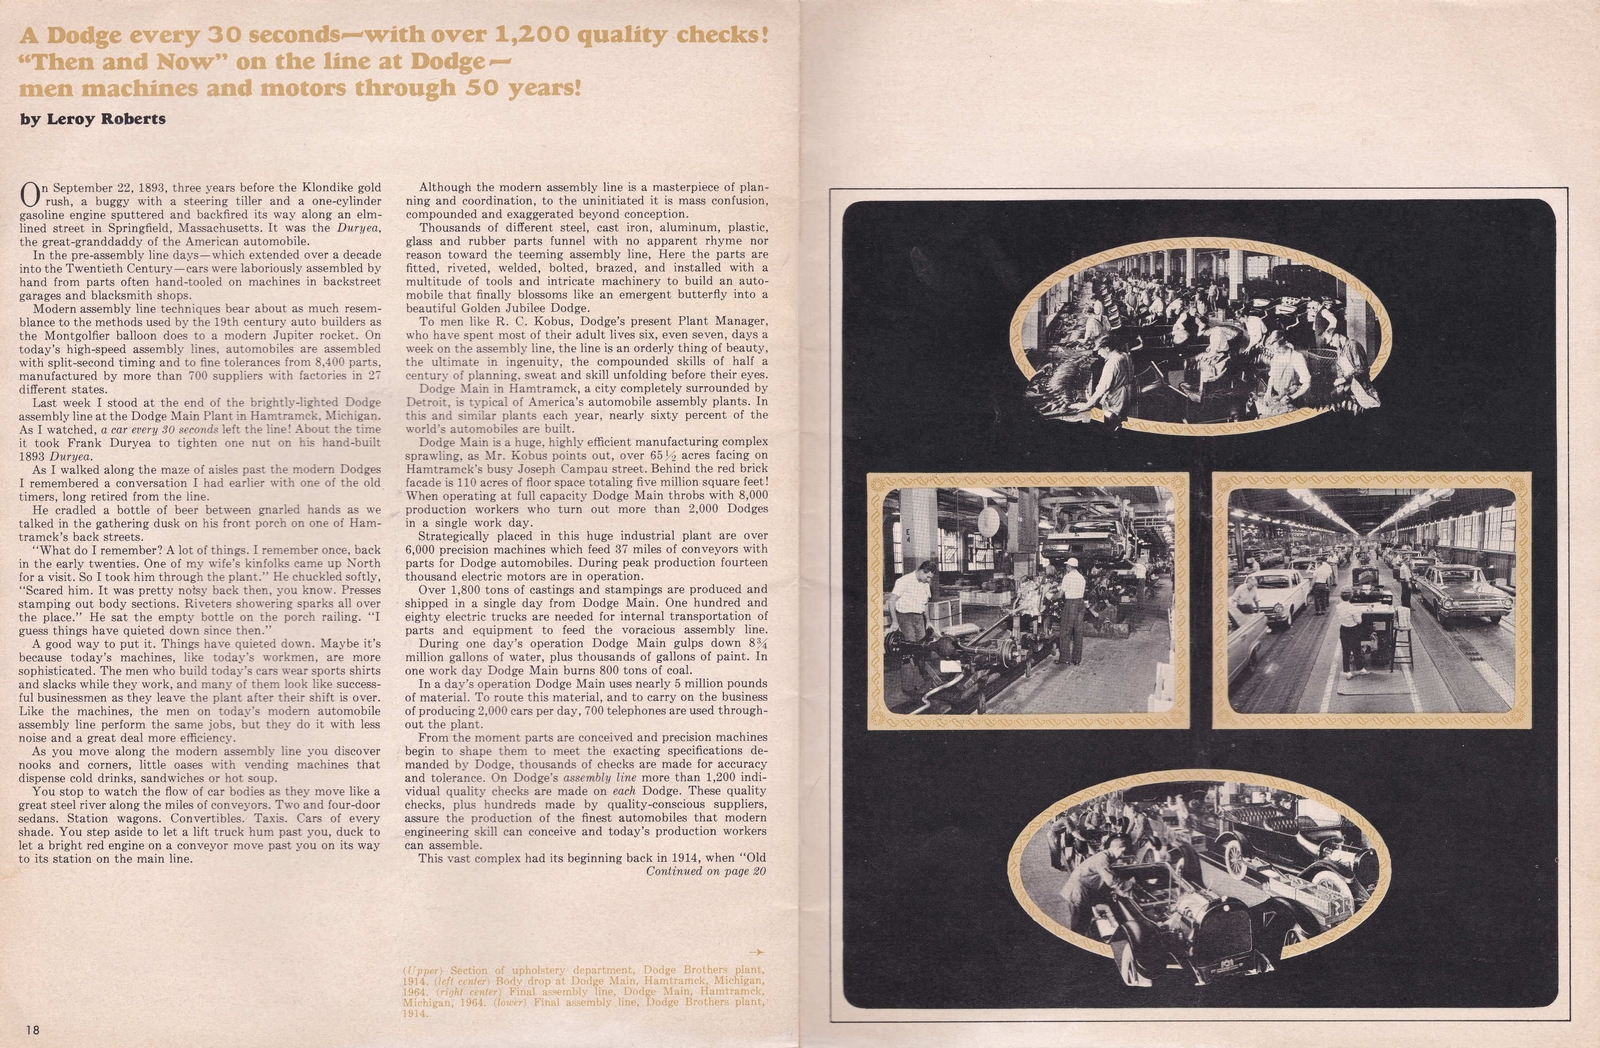 n_1964 Dodge Golden Jubilee Magazine-18-19.jpg